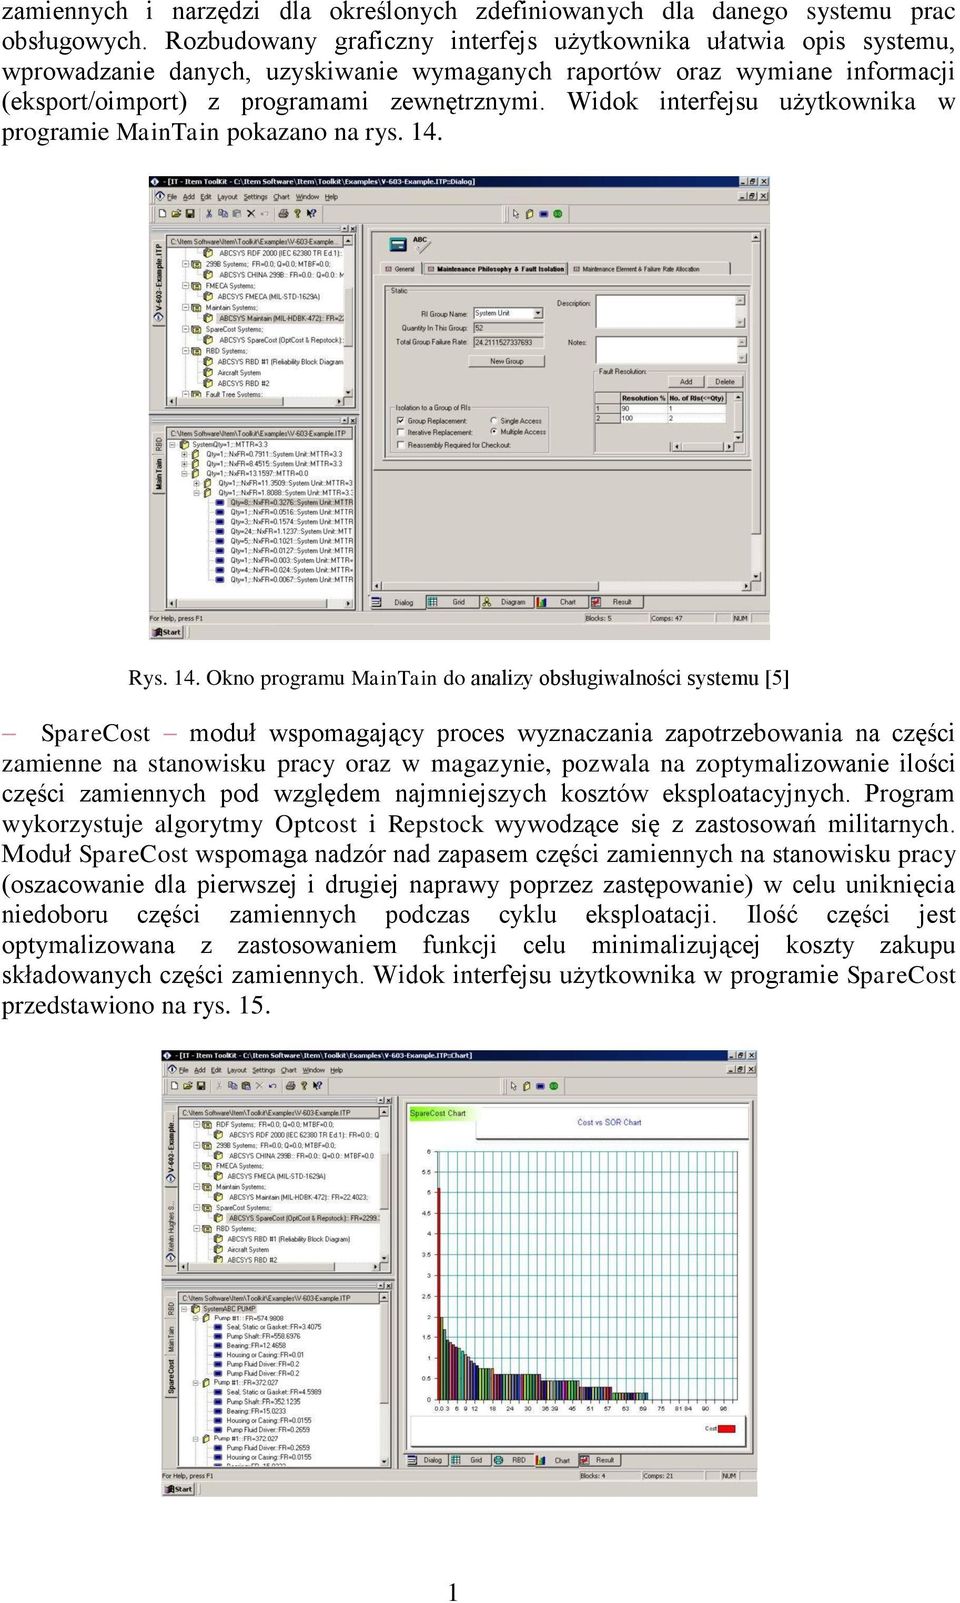 Widok interfejsu użytkownika w programie MainTain pokazano na rys. 14.